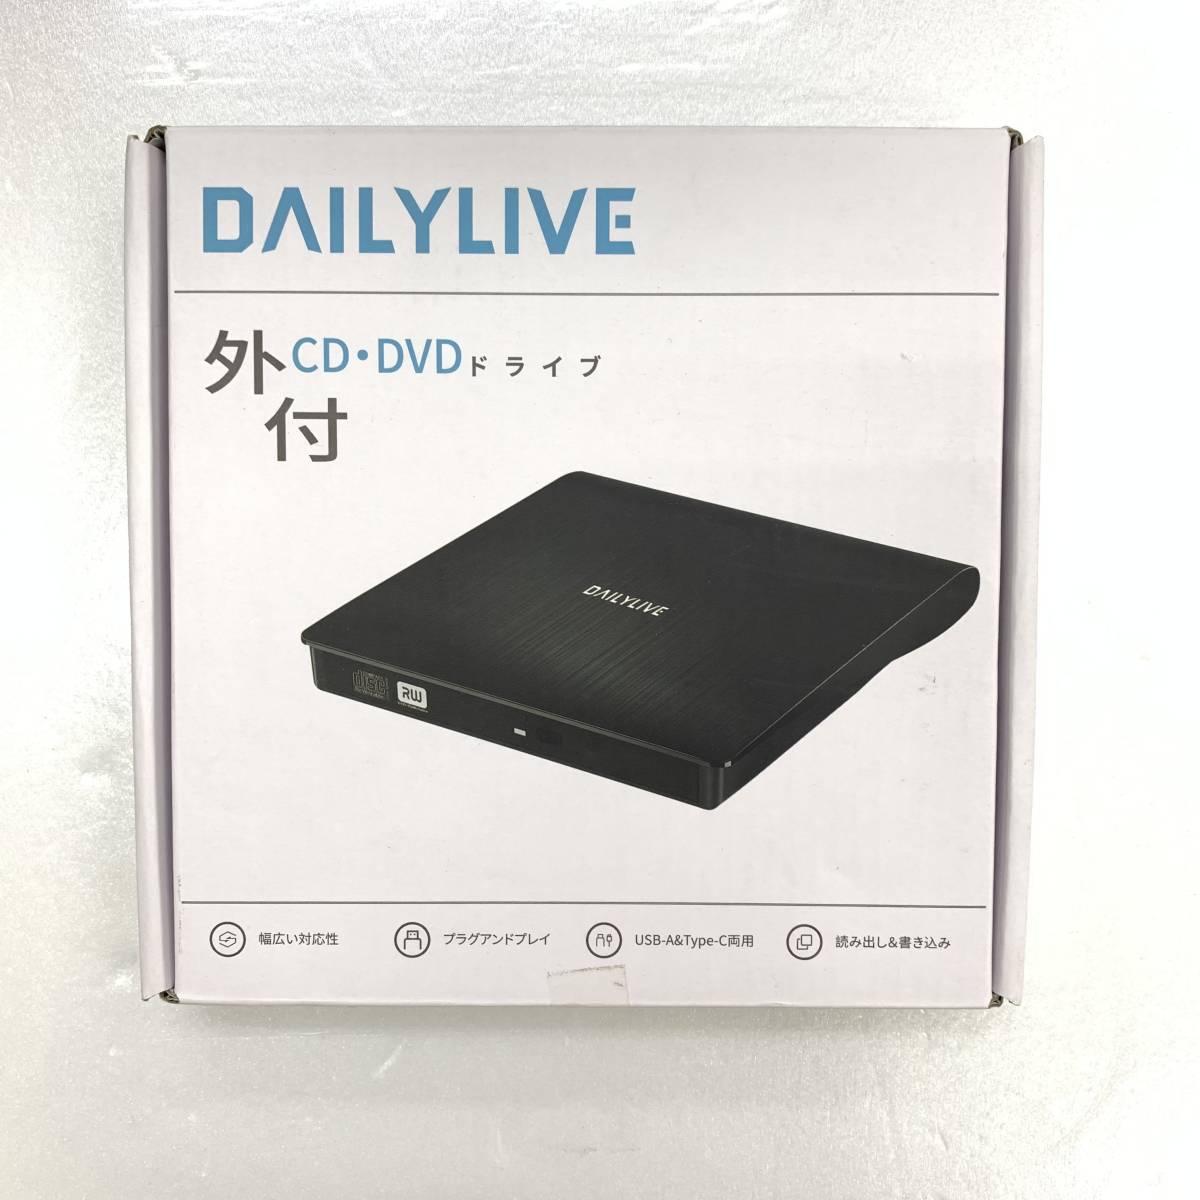 1円オークション】 DAILYLIVE BLENCK DVDドライブ 外付け USB3.0